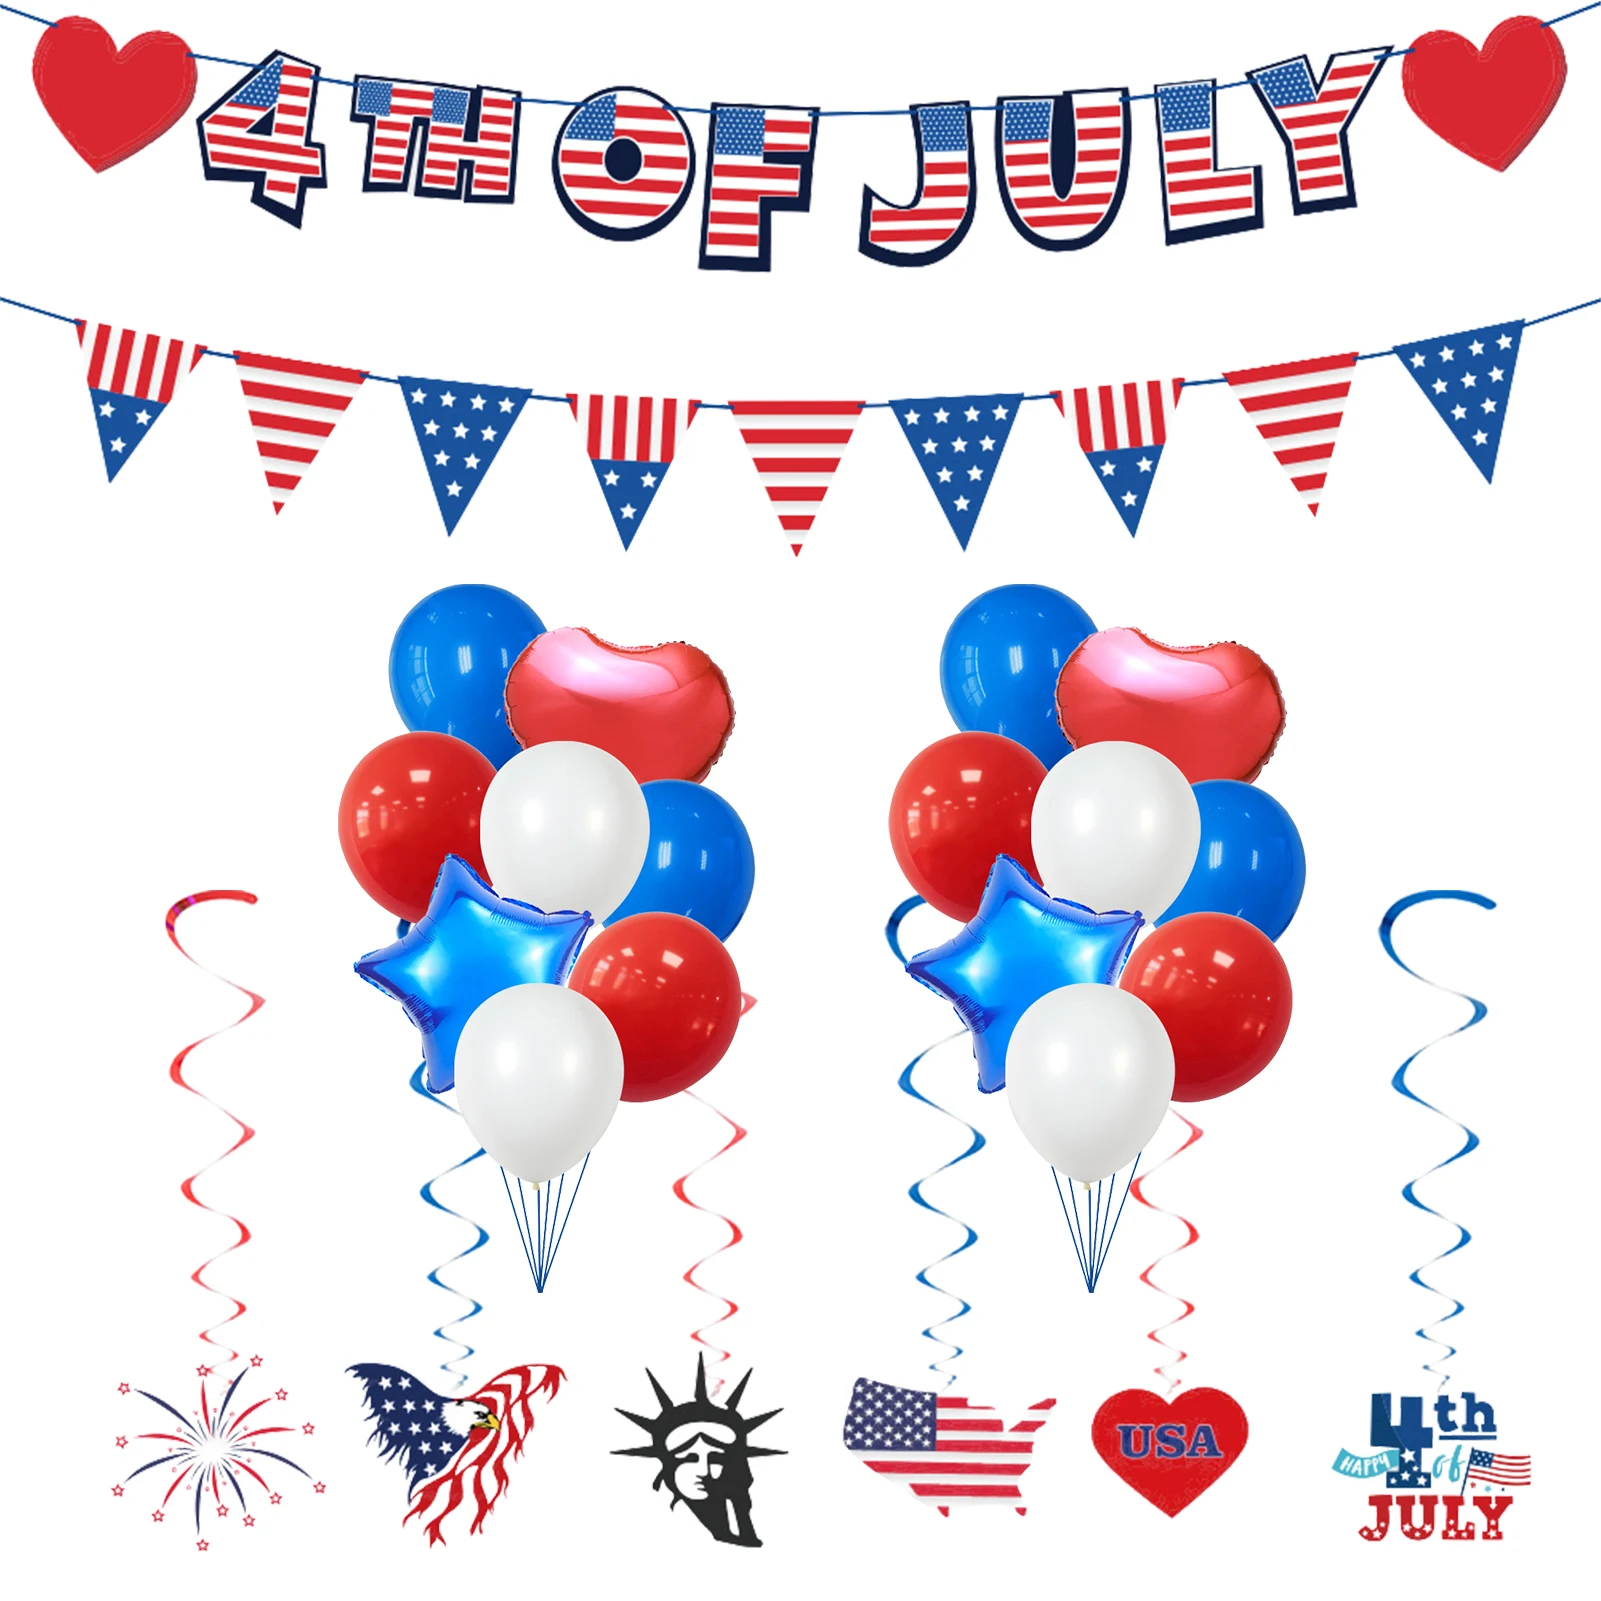 

Набор воздушных шаров 4 июля, с баннером, 4 июля, украшения, белые, красные, синие, латексные воздушные шары, украшения для вечевечерние НКИ